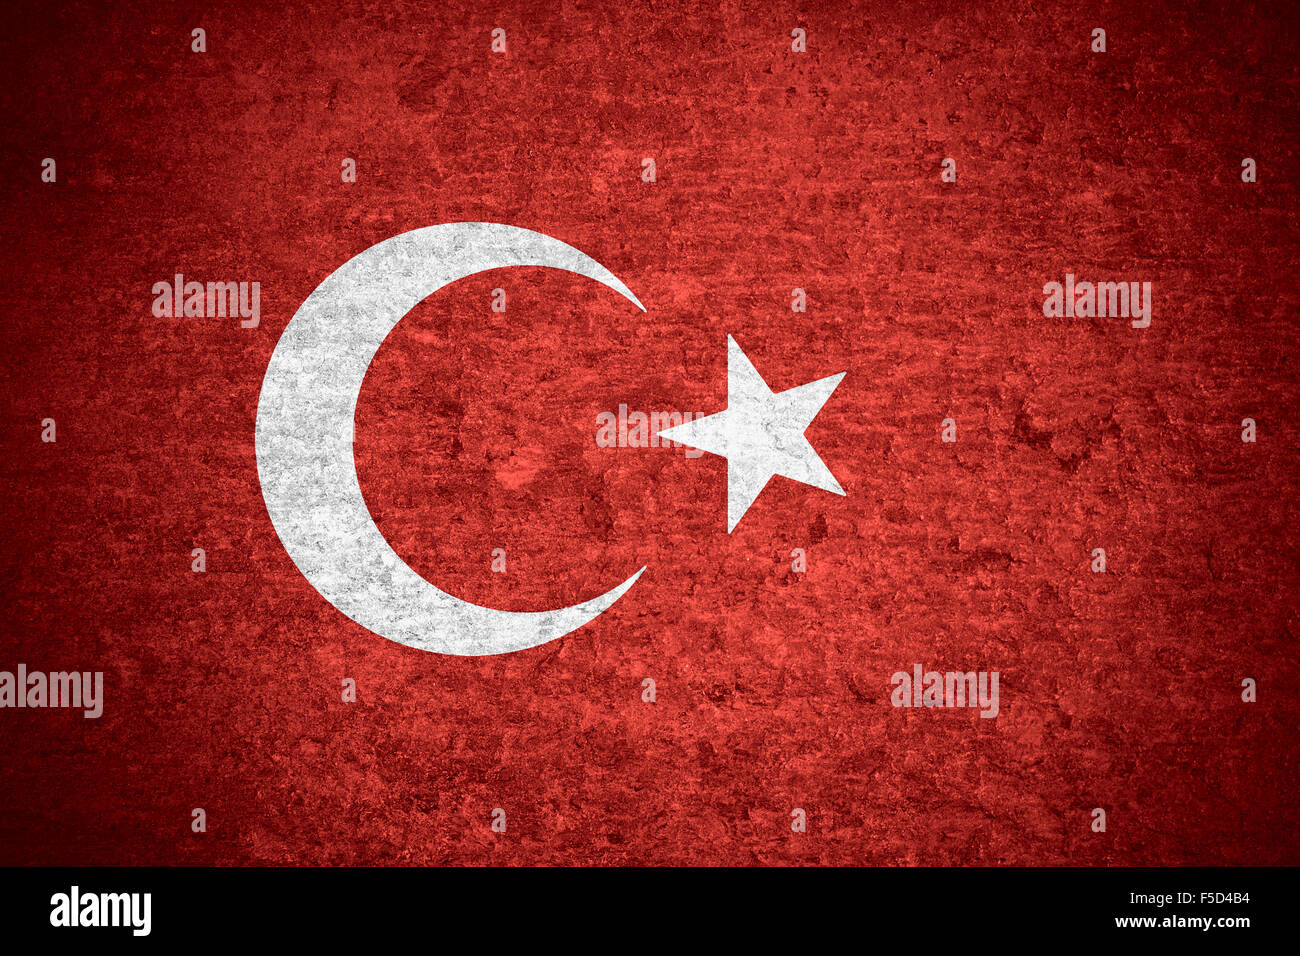 flag ofTurkeyor Turkish banner on old metal texture background Stock Photo